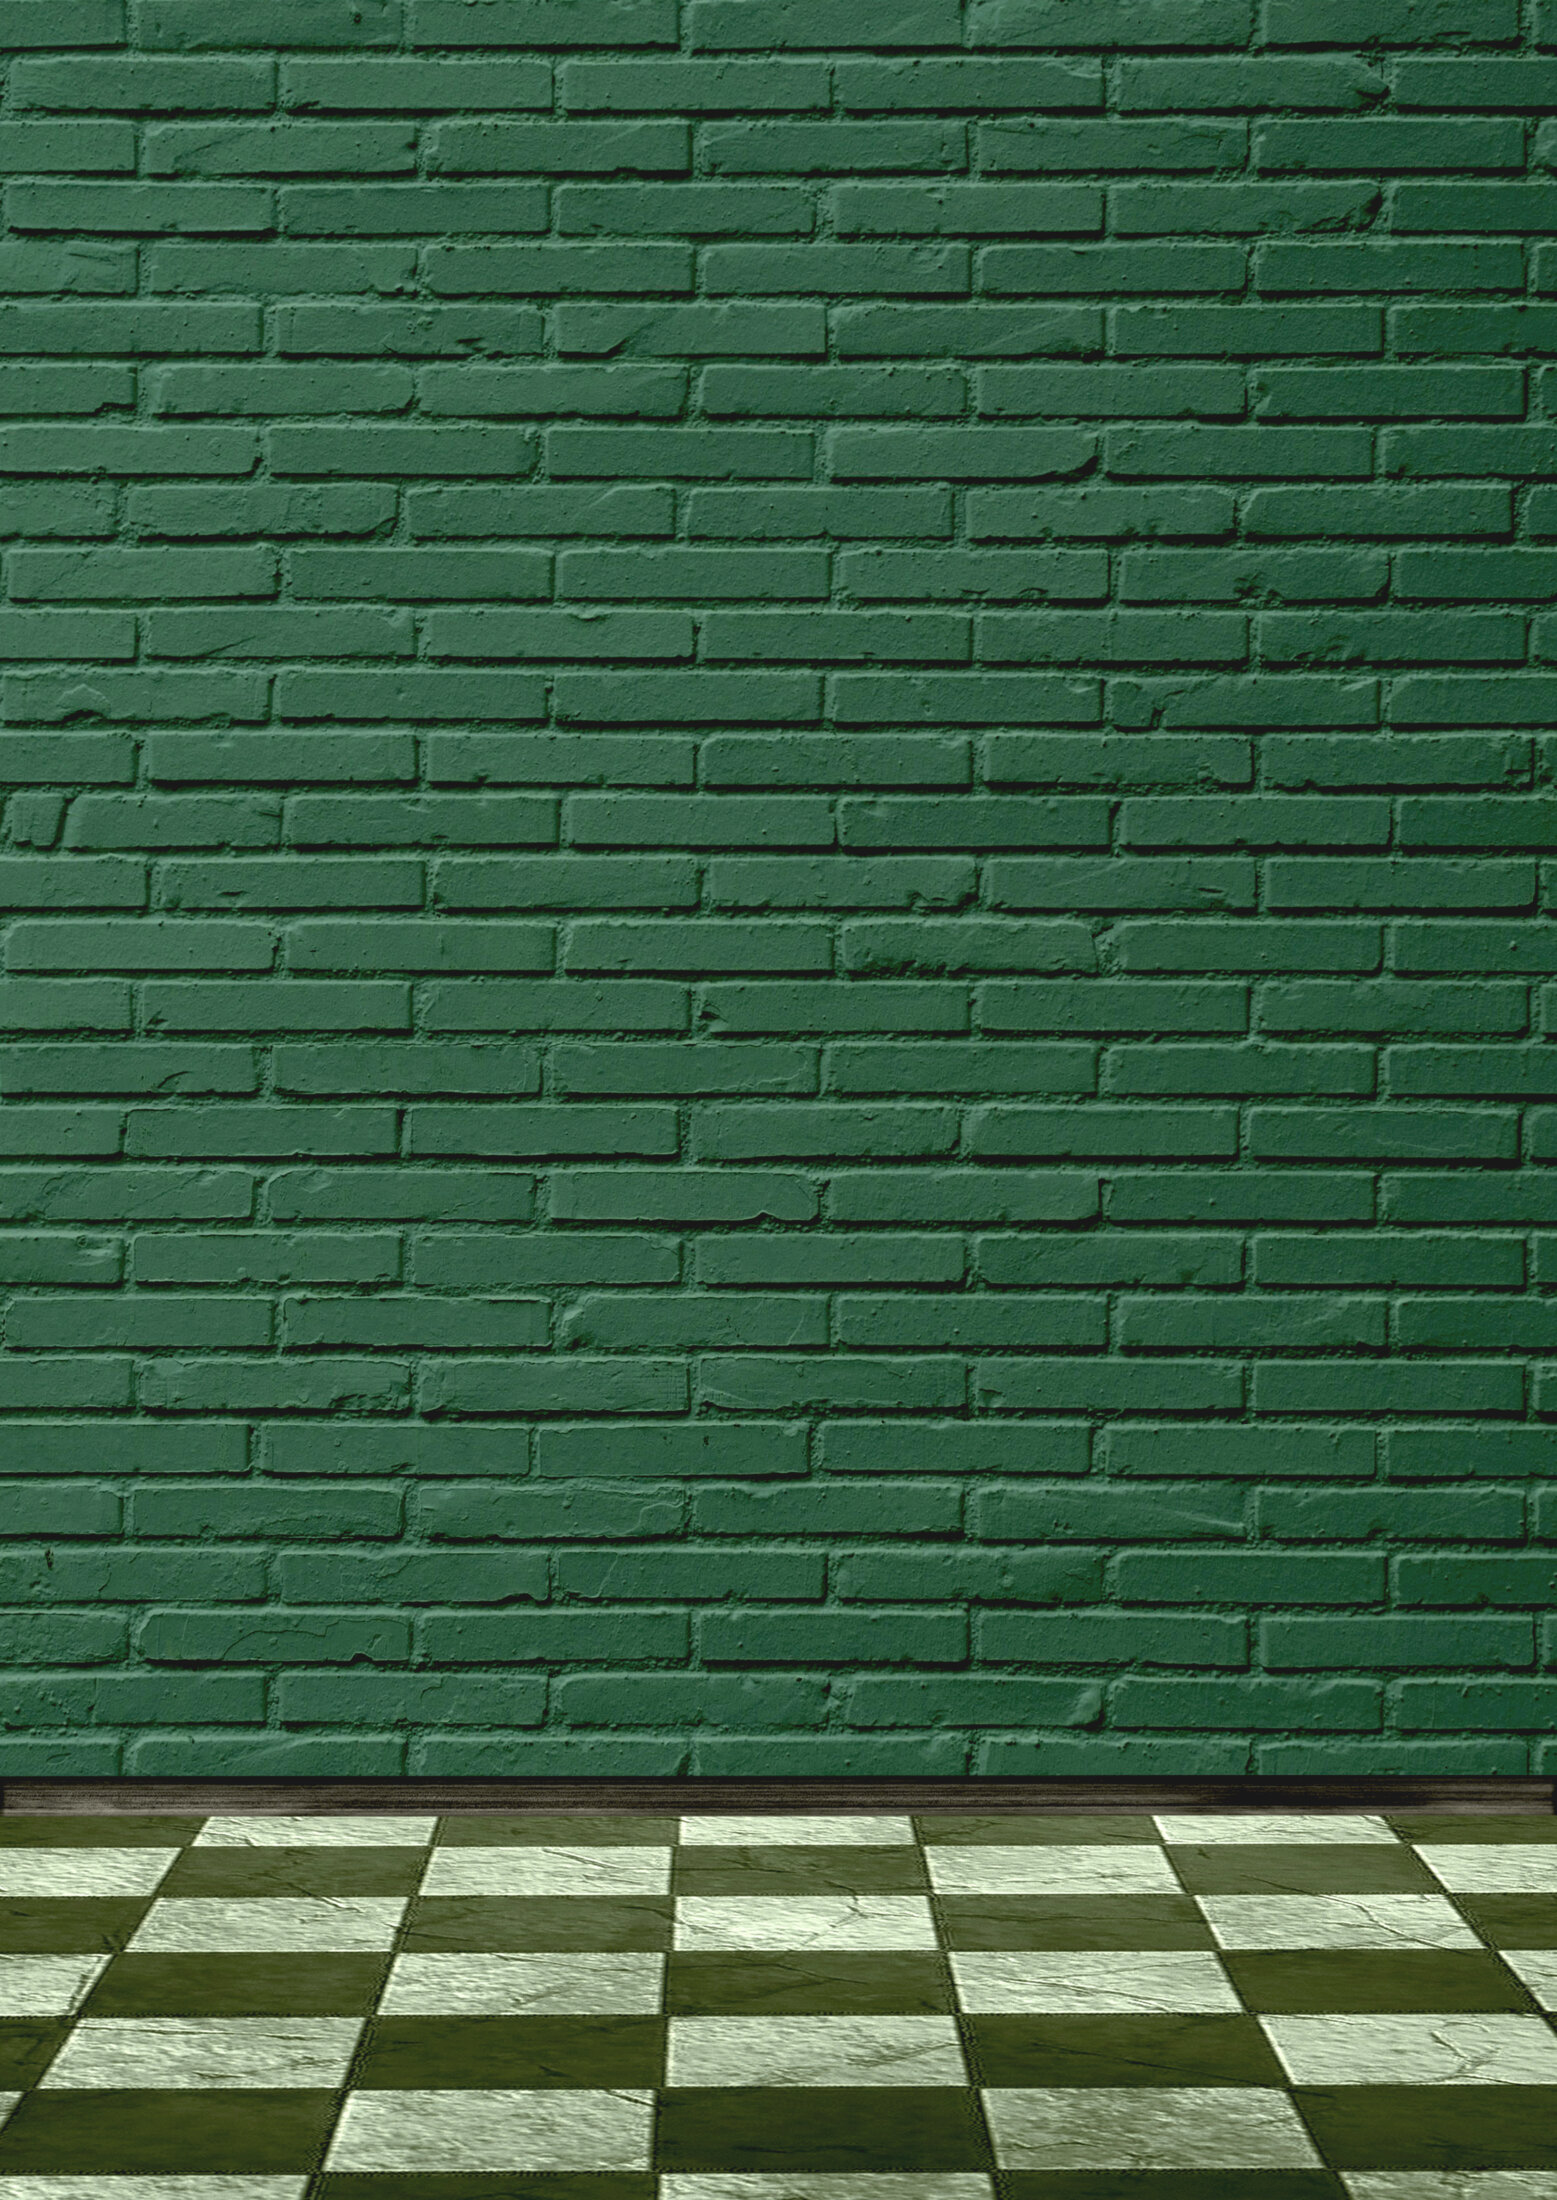 Hintergrund leere grüne Wand mit Ziegelsteinen und Holzboden